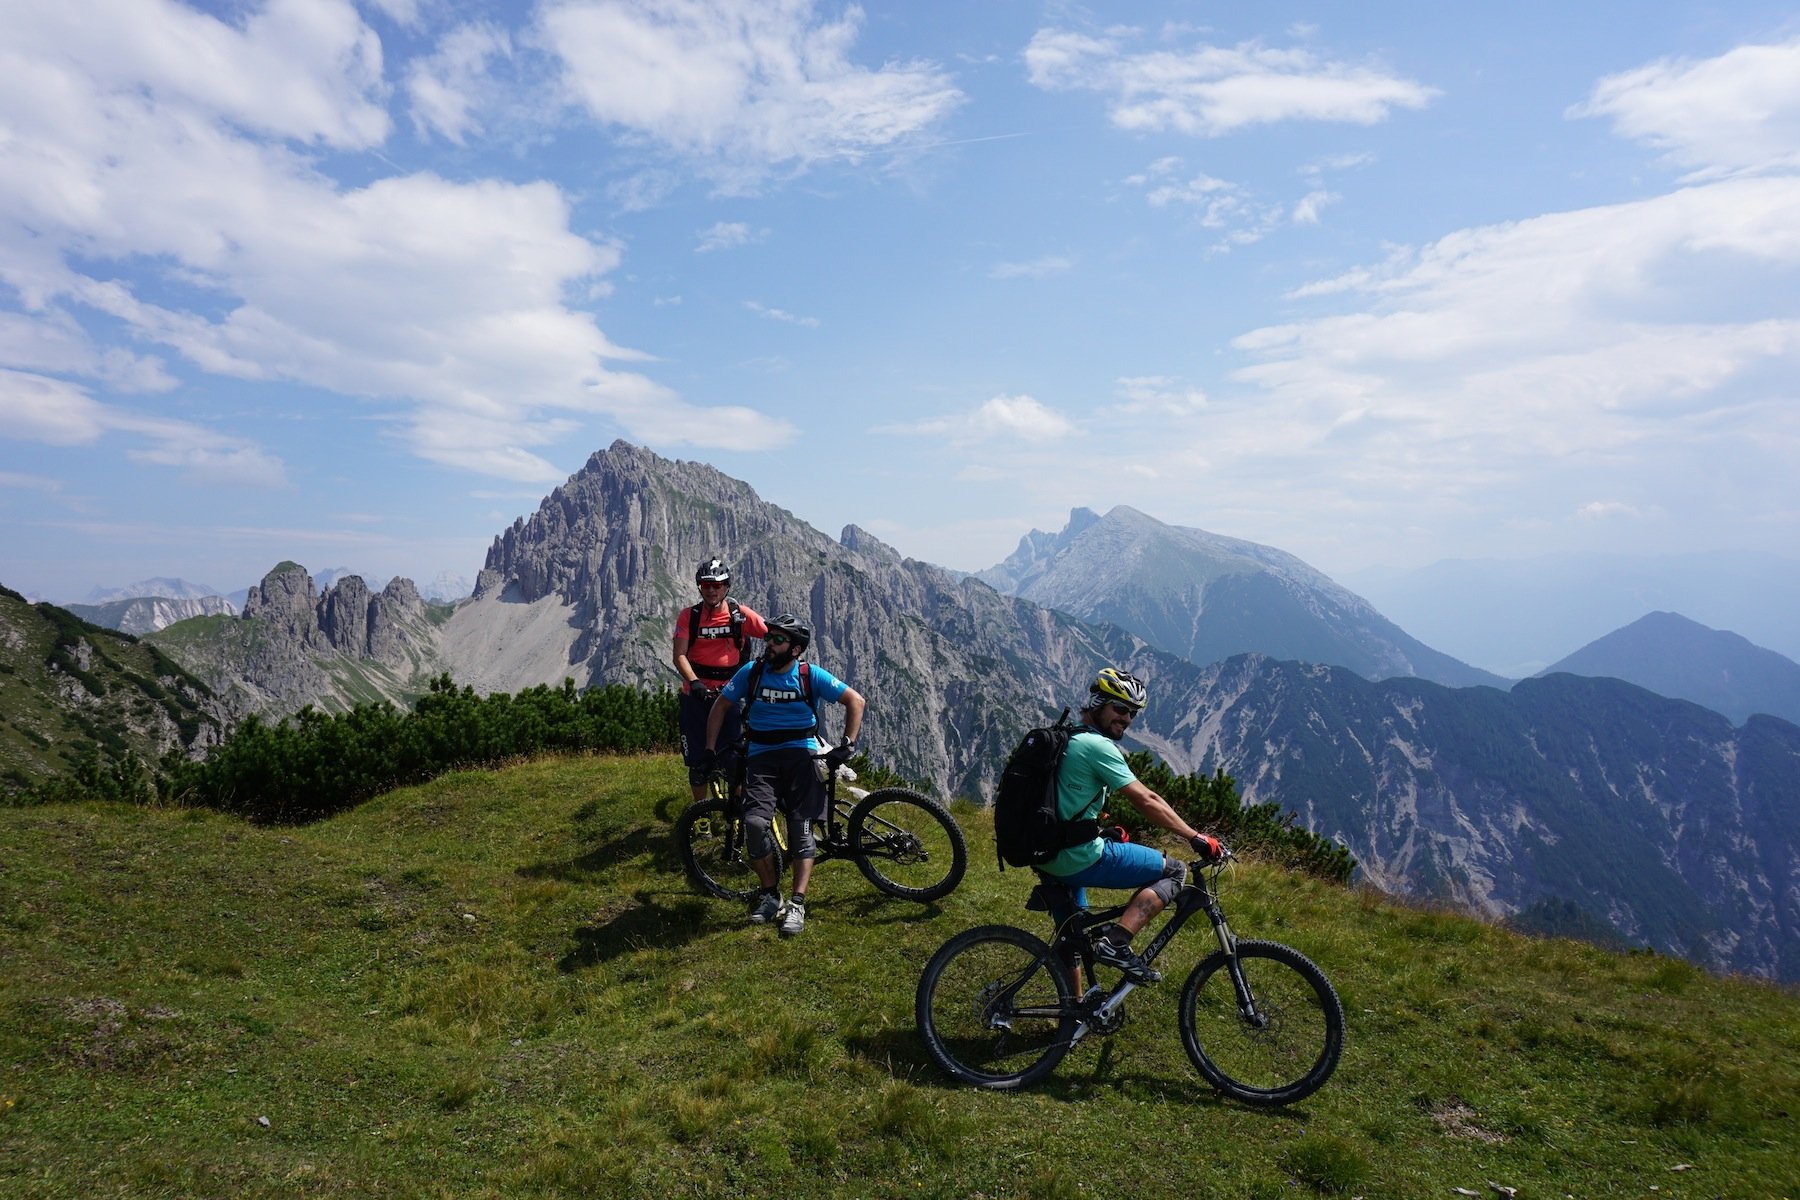 Sommer – Bikespecial 2015: Rauf aufs Mountainbike – welche Ausrüstung benötigt man für den Einstieg?